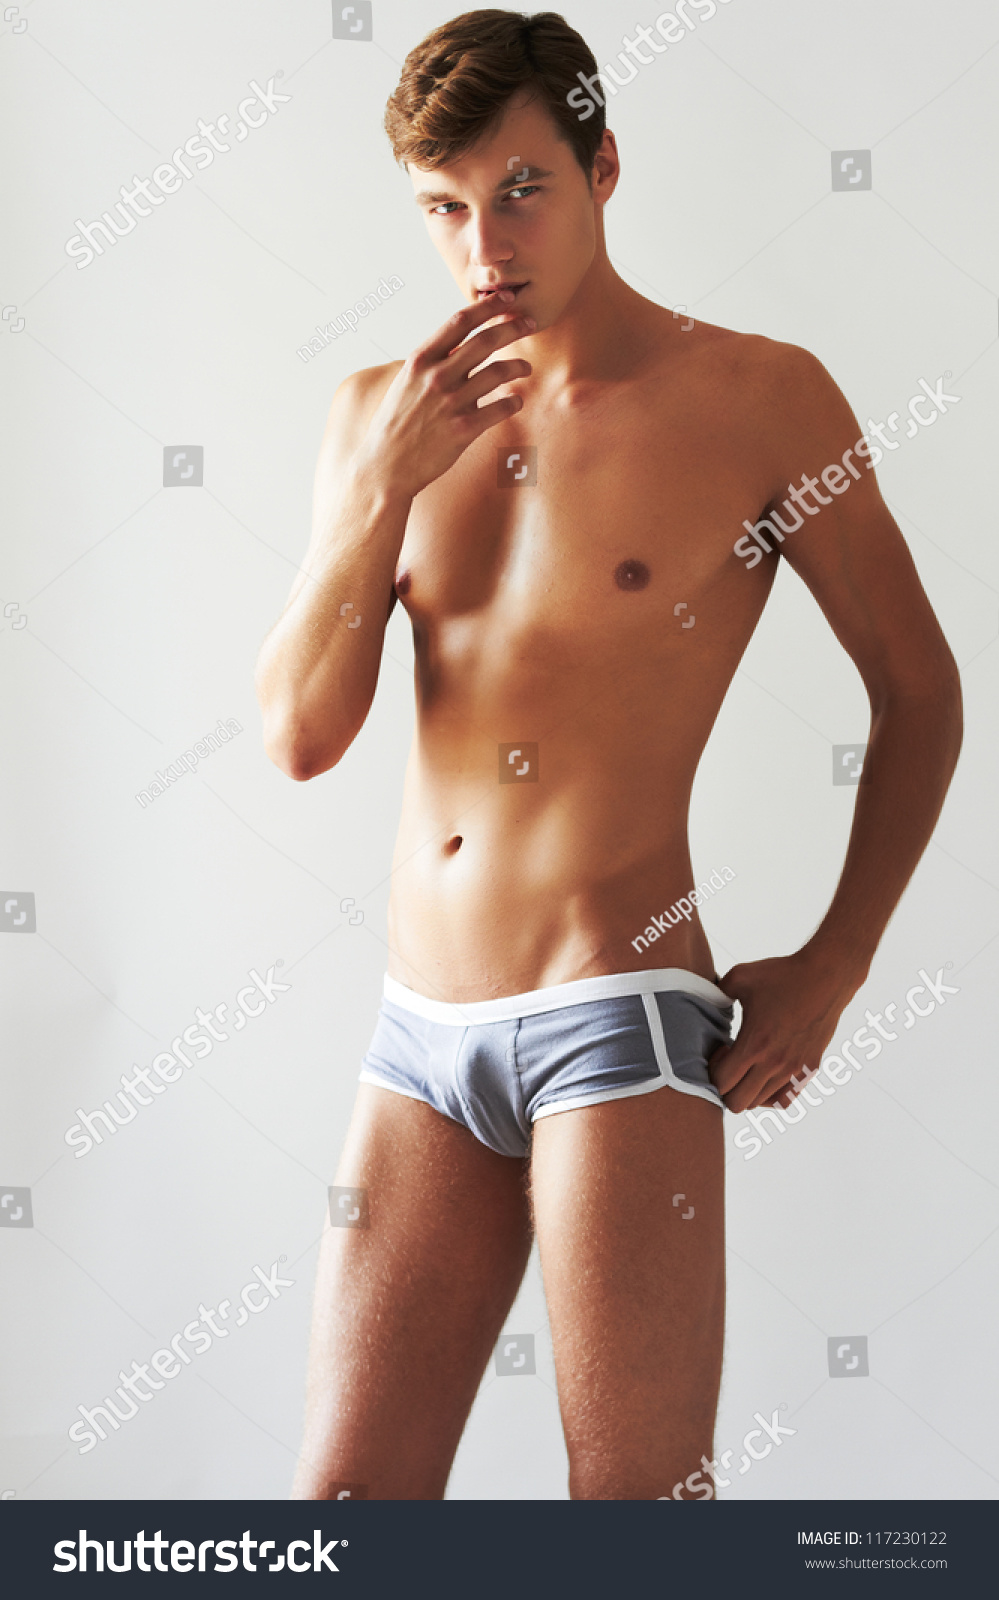 Celebrity Men Get Naked Massage Pic